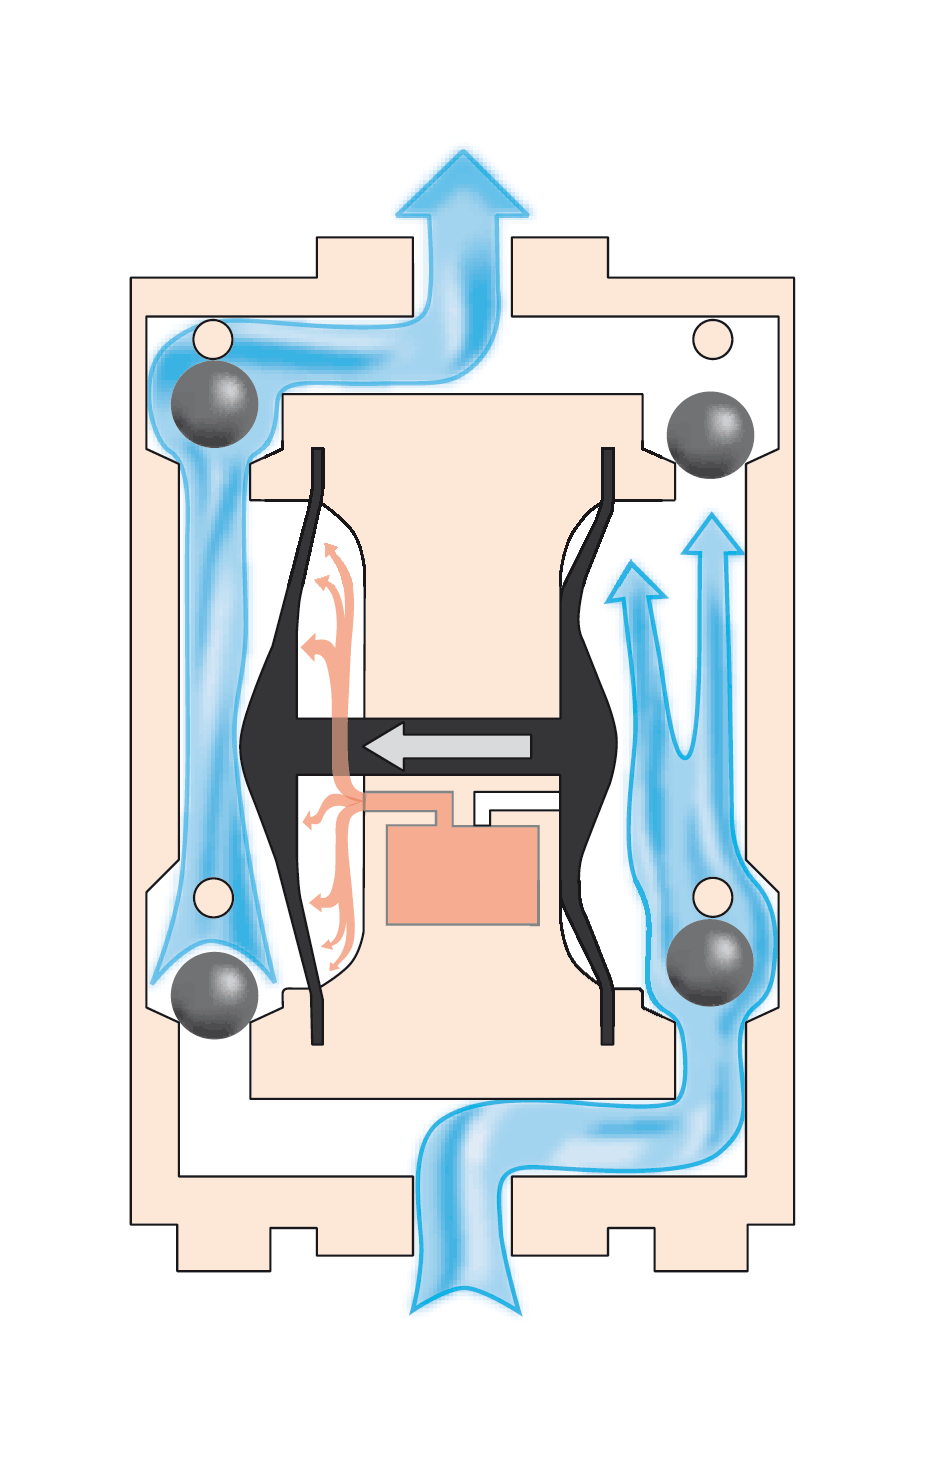 Animasjon som viser hvordan ei membranpumpe er bygget opp innvendig. Den viser to kamre med kuleventiler (tilbakeslagsventiler) der væske blir pumpet videre ved hjelp av en bevegelig membran montert midt mellom kamrene. Illustrasjon.